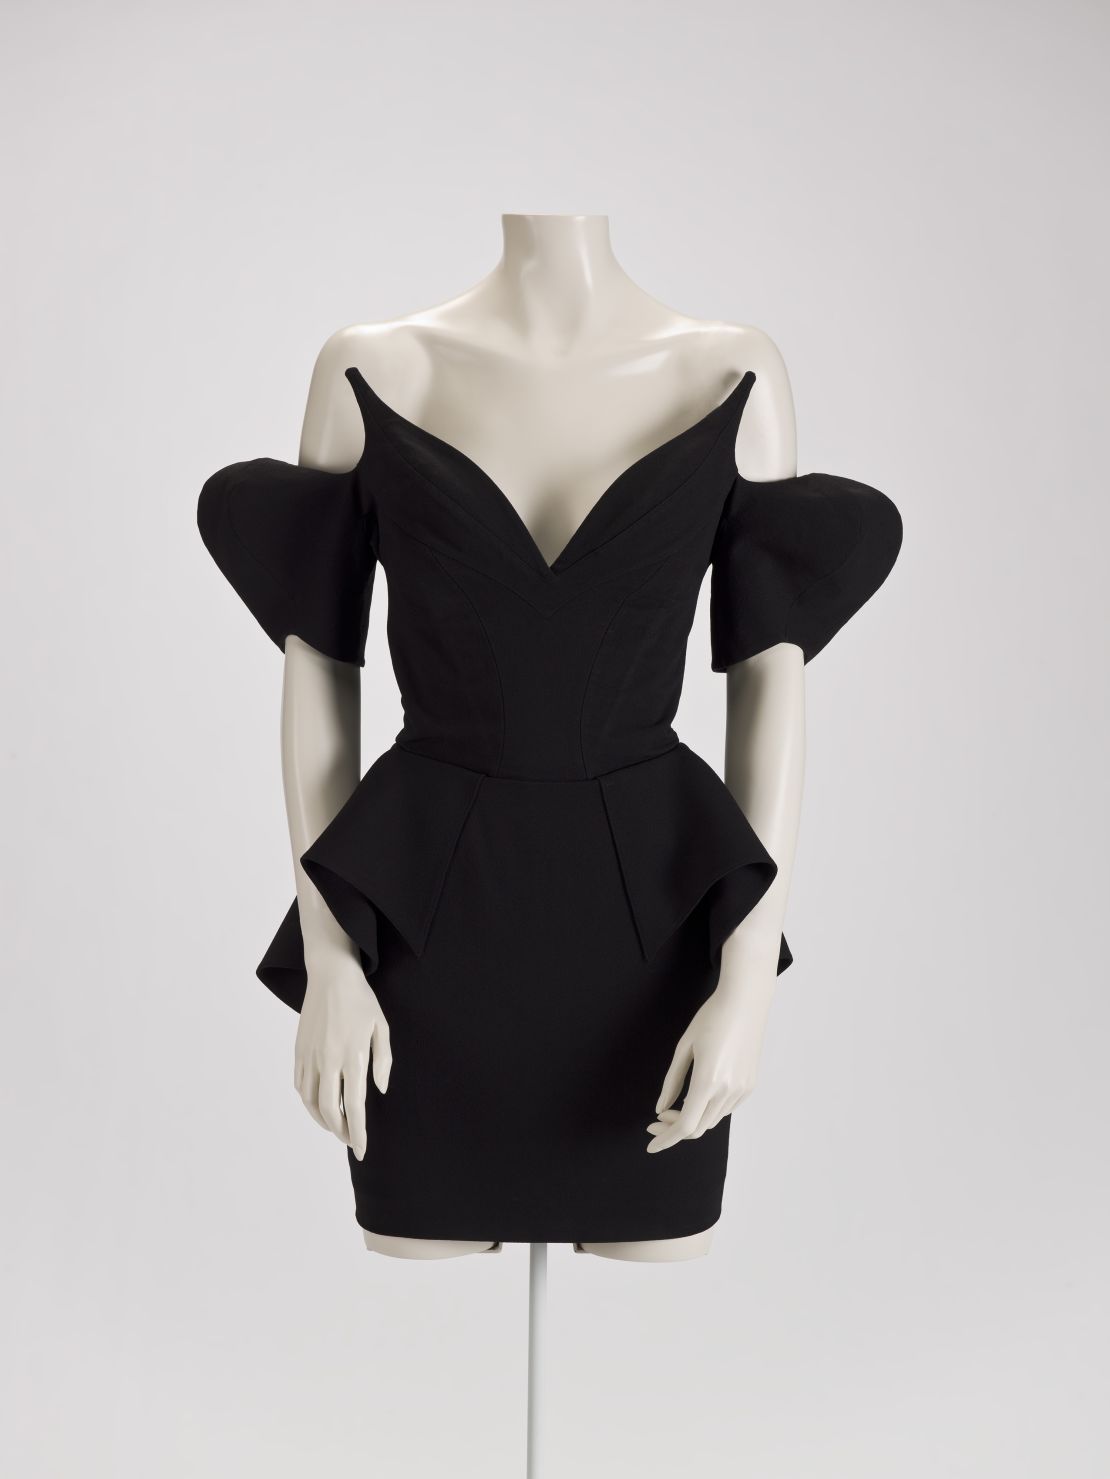 A little black dress by Thierry Mugler.